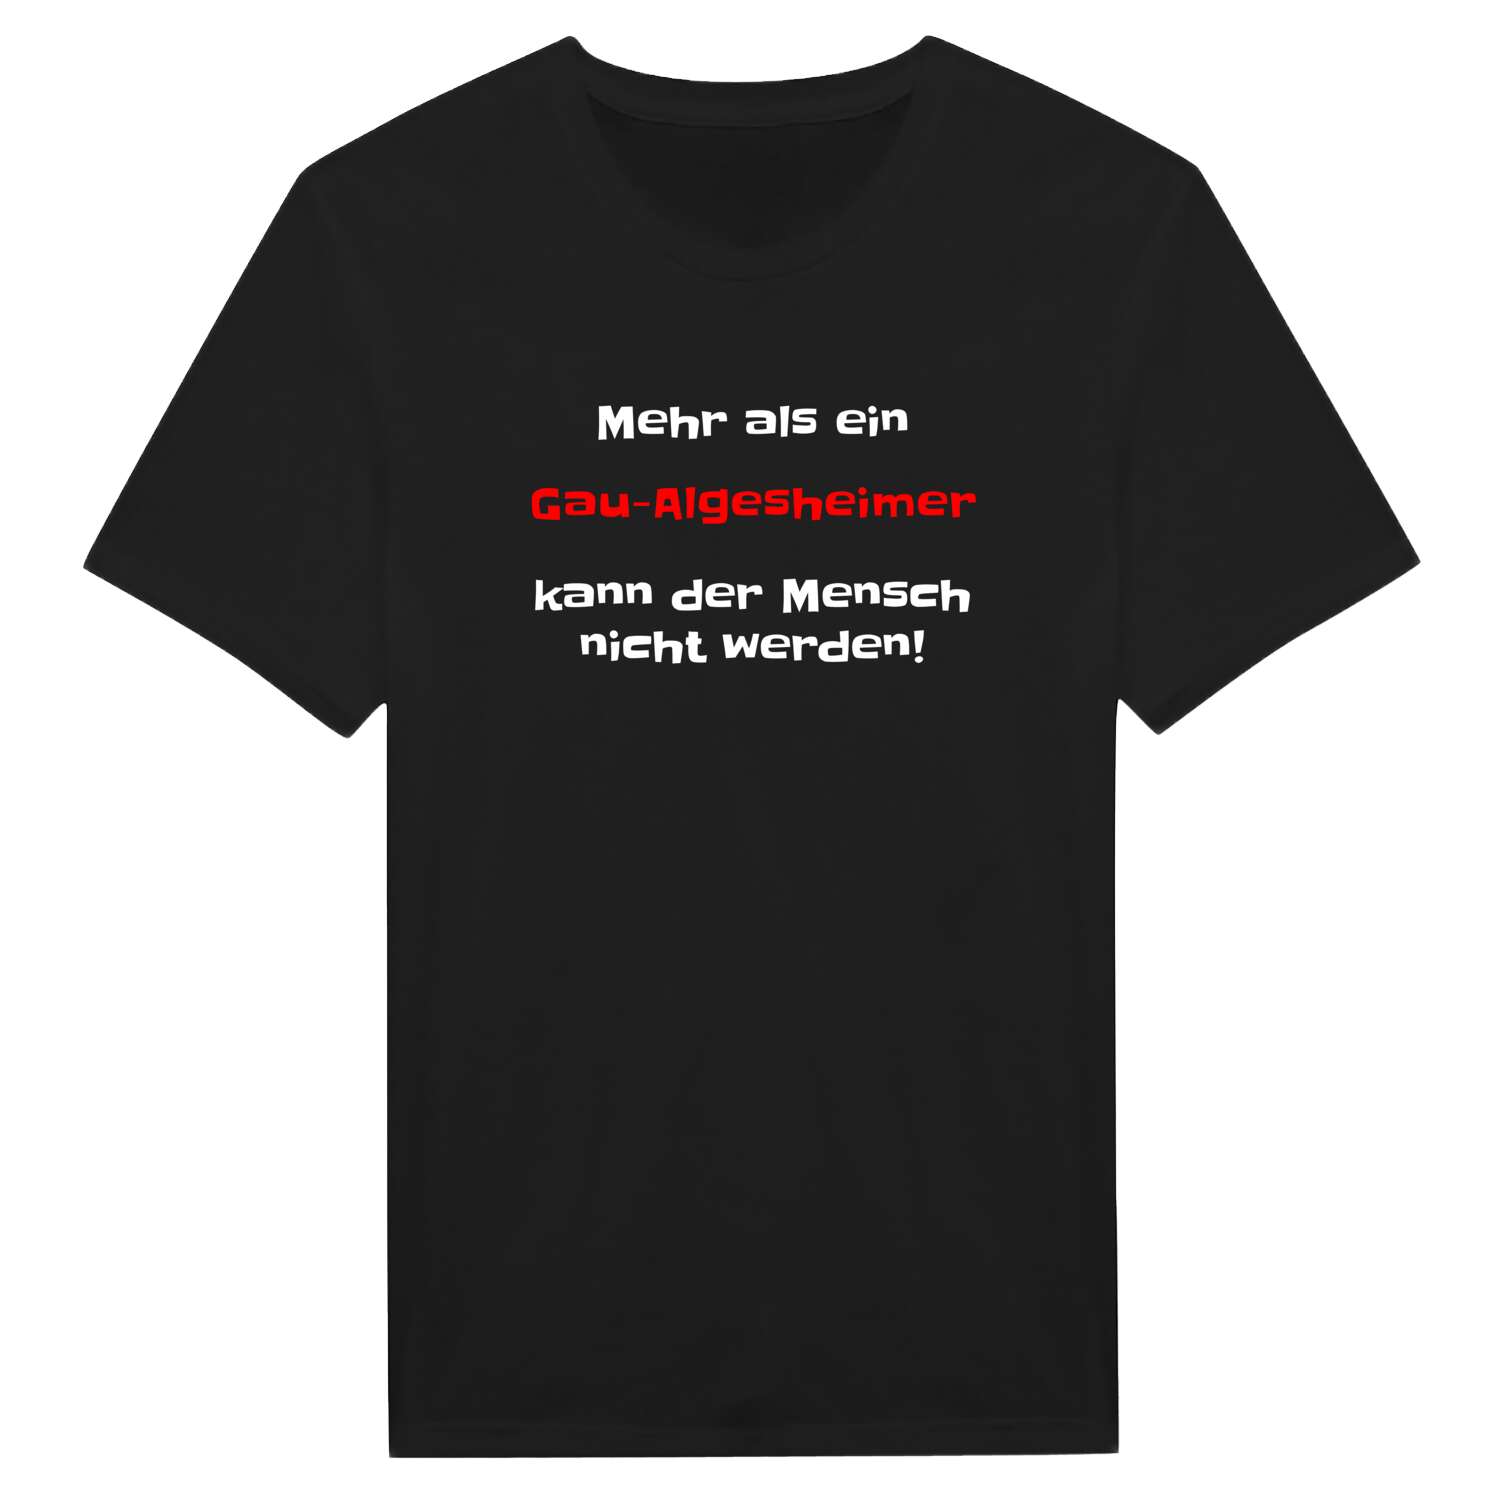 Gau-Algesheim T-Shirt »Mehr als ein«